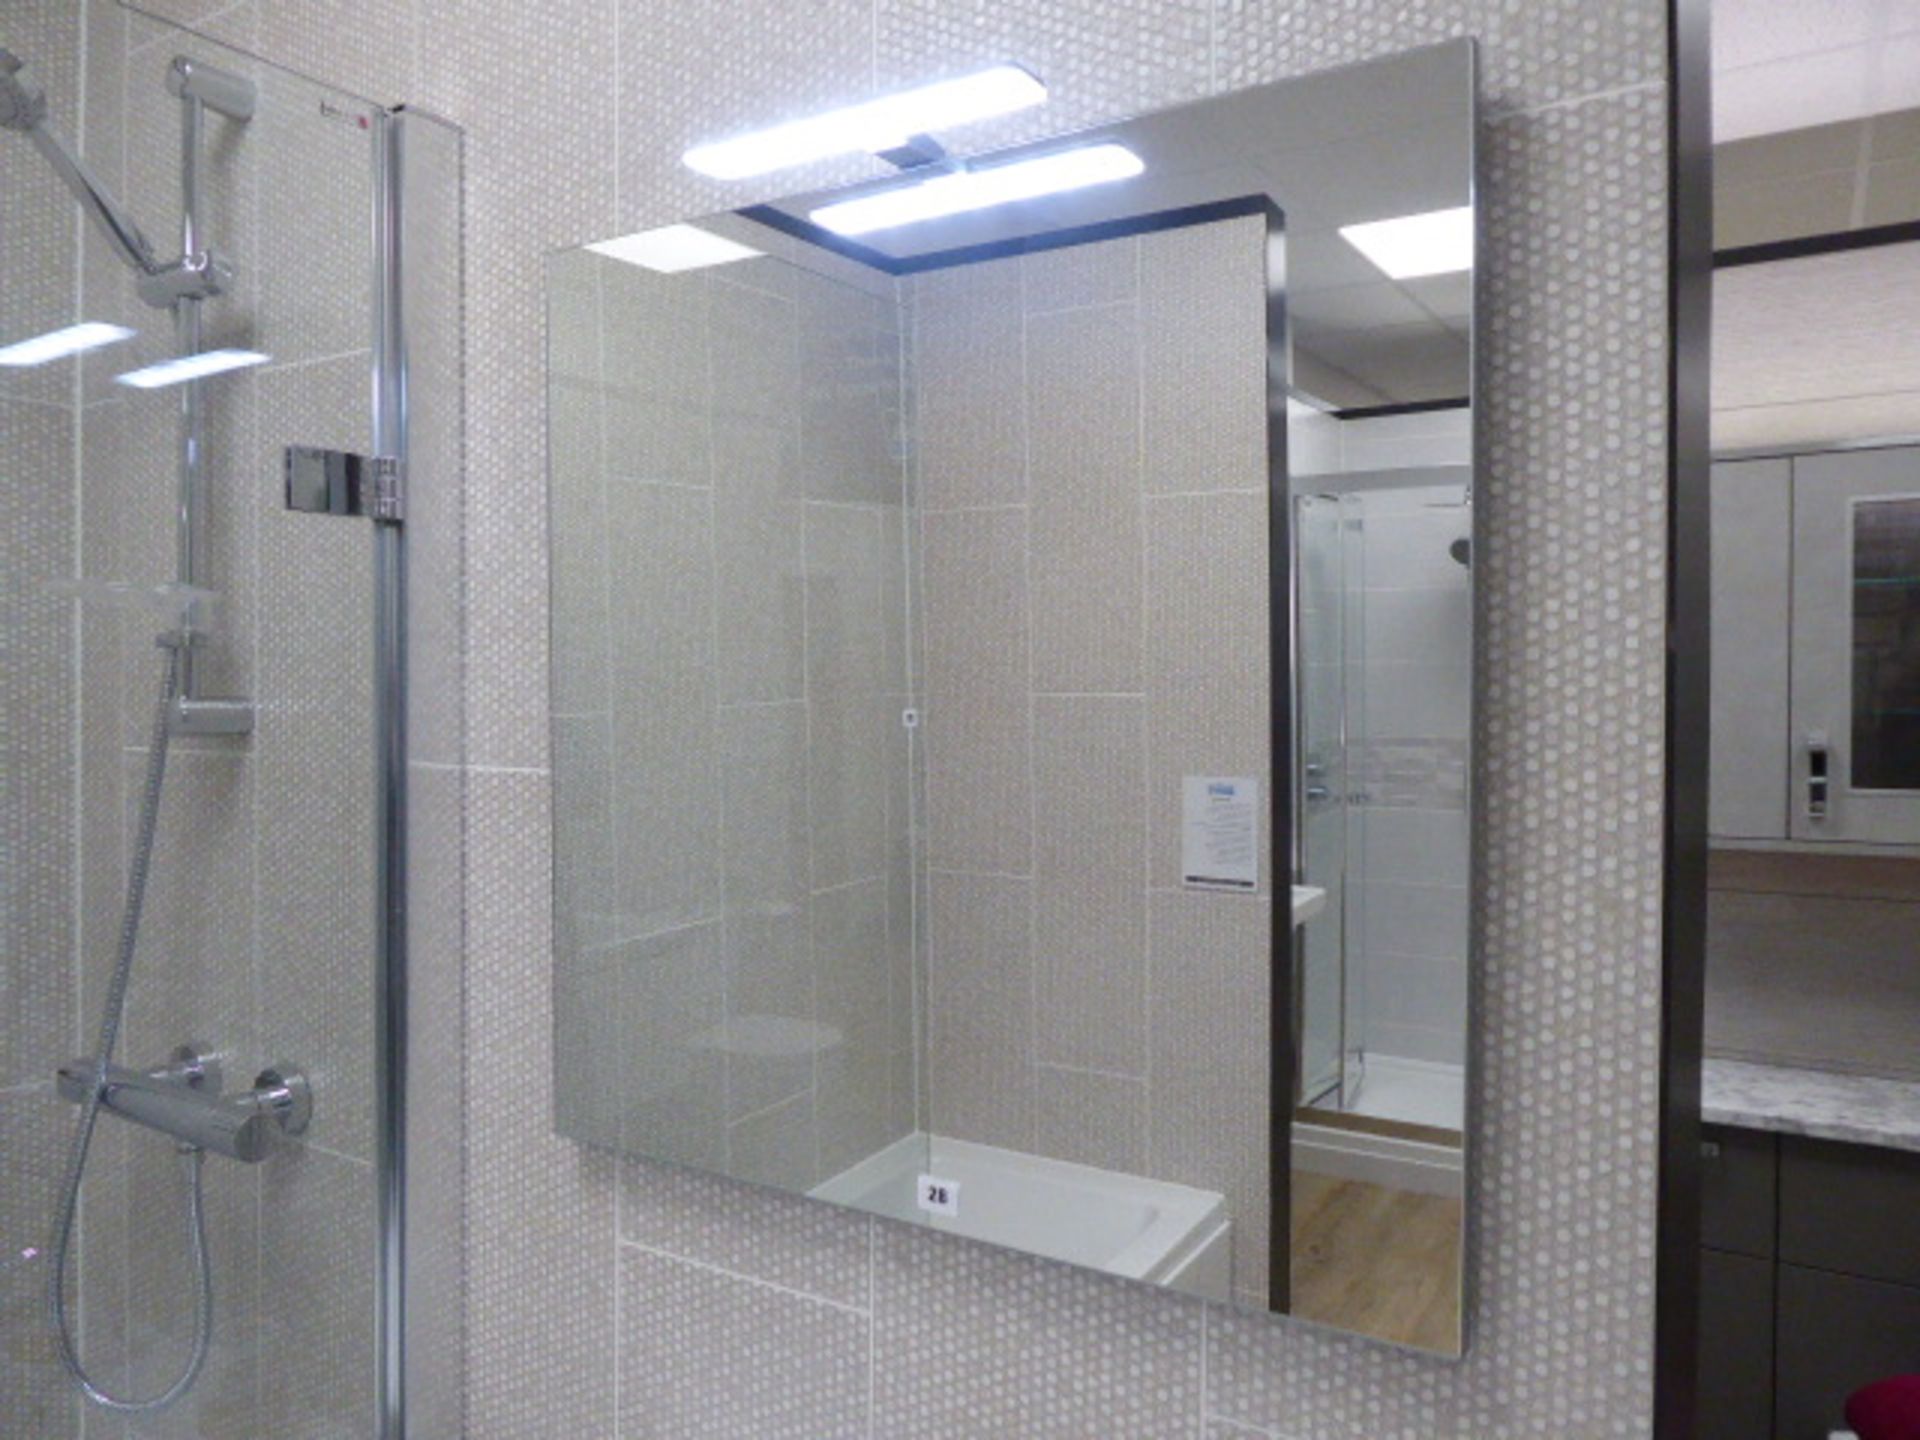 Roca Victoria-N bathroom comprising bath with filler, single door shower screen, mixer shower, - Image 3 of 8